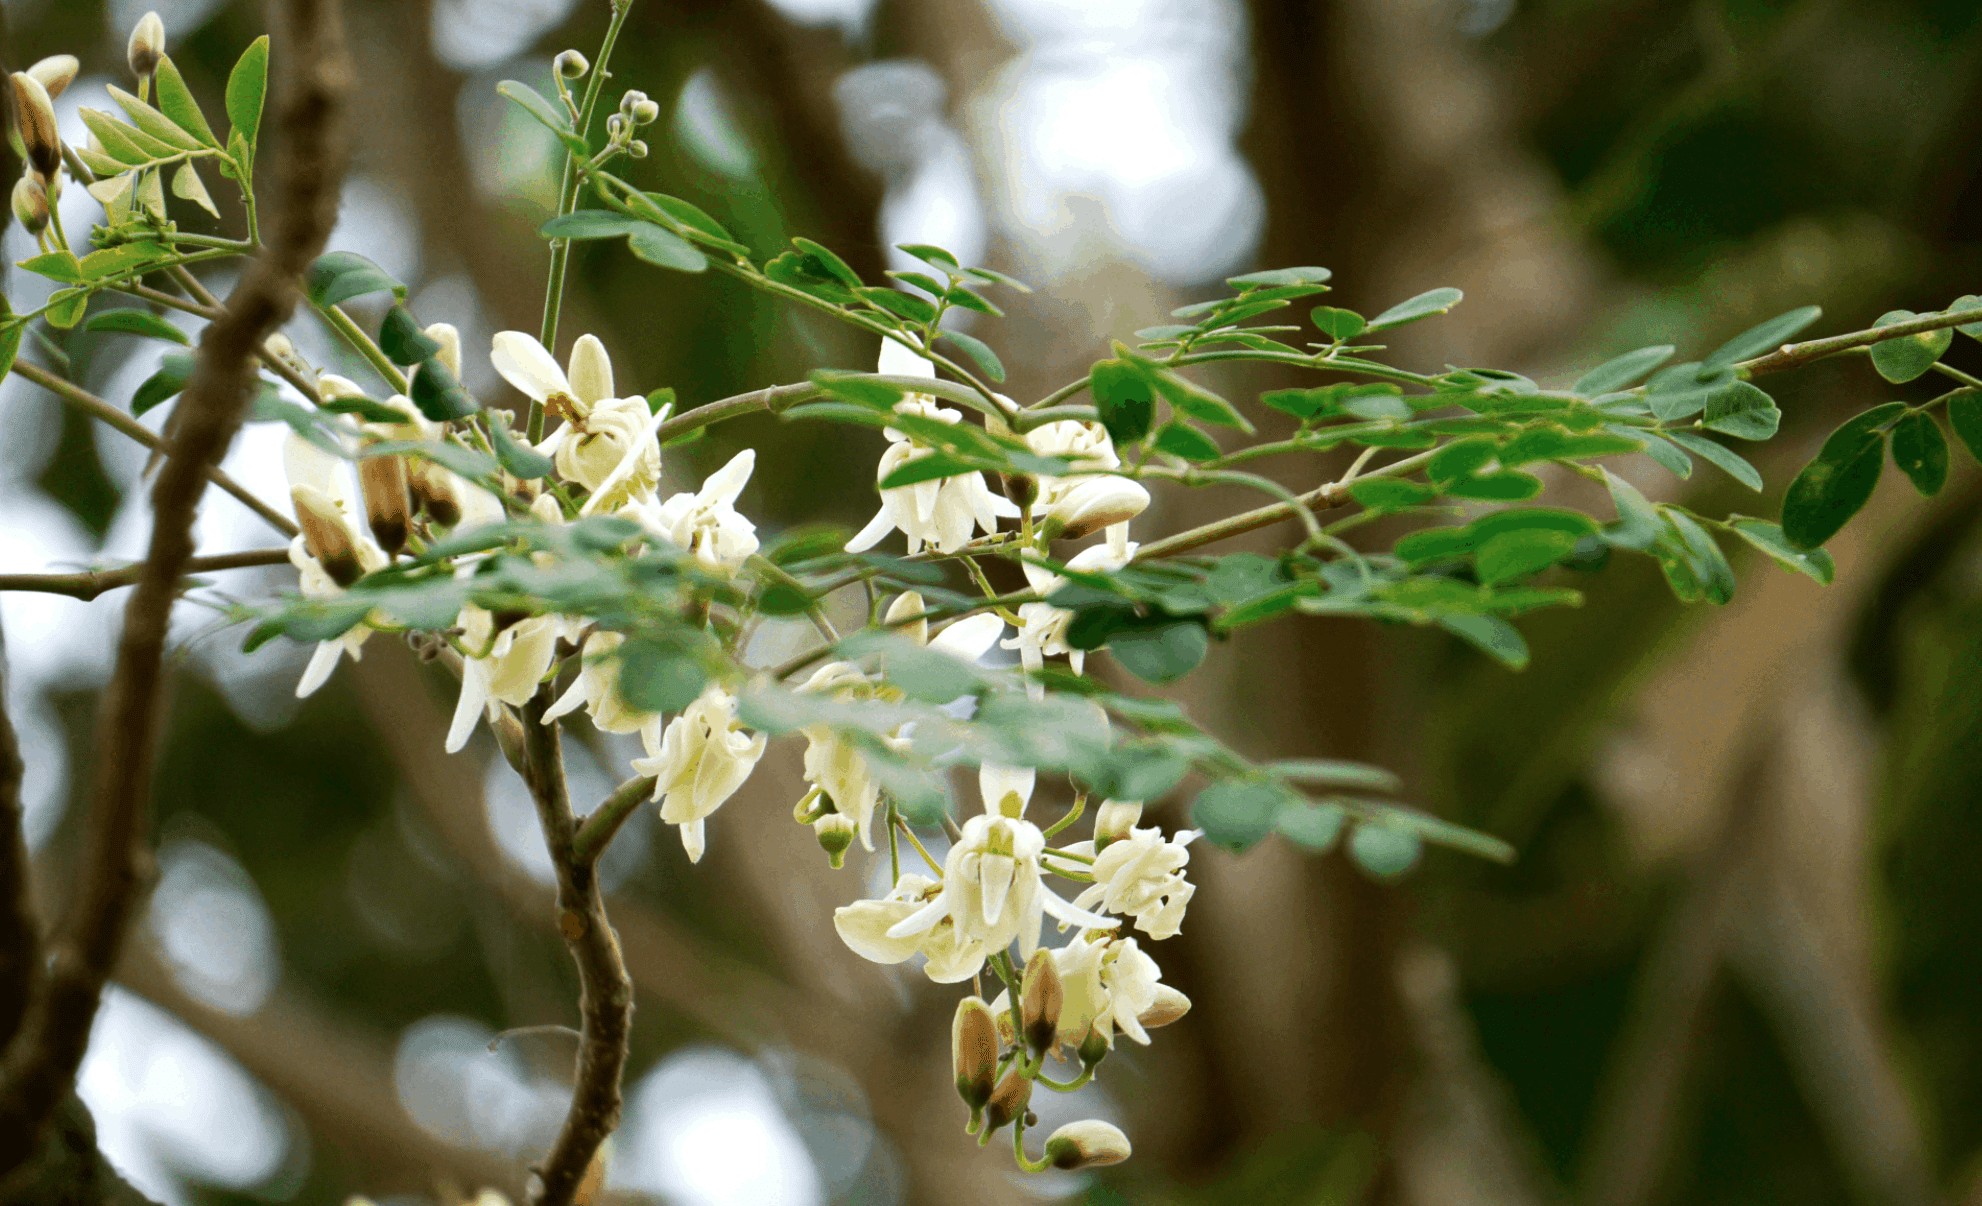 Moringa plant